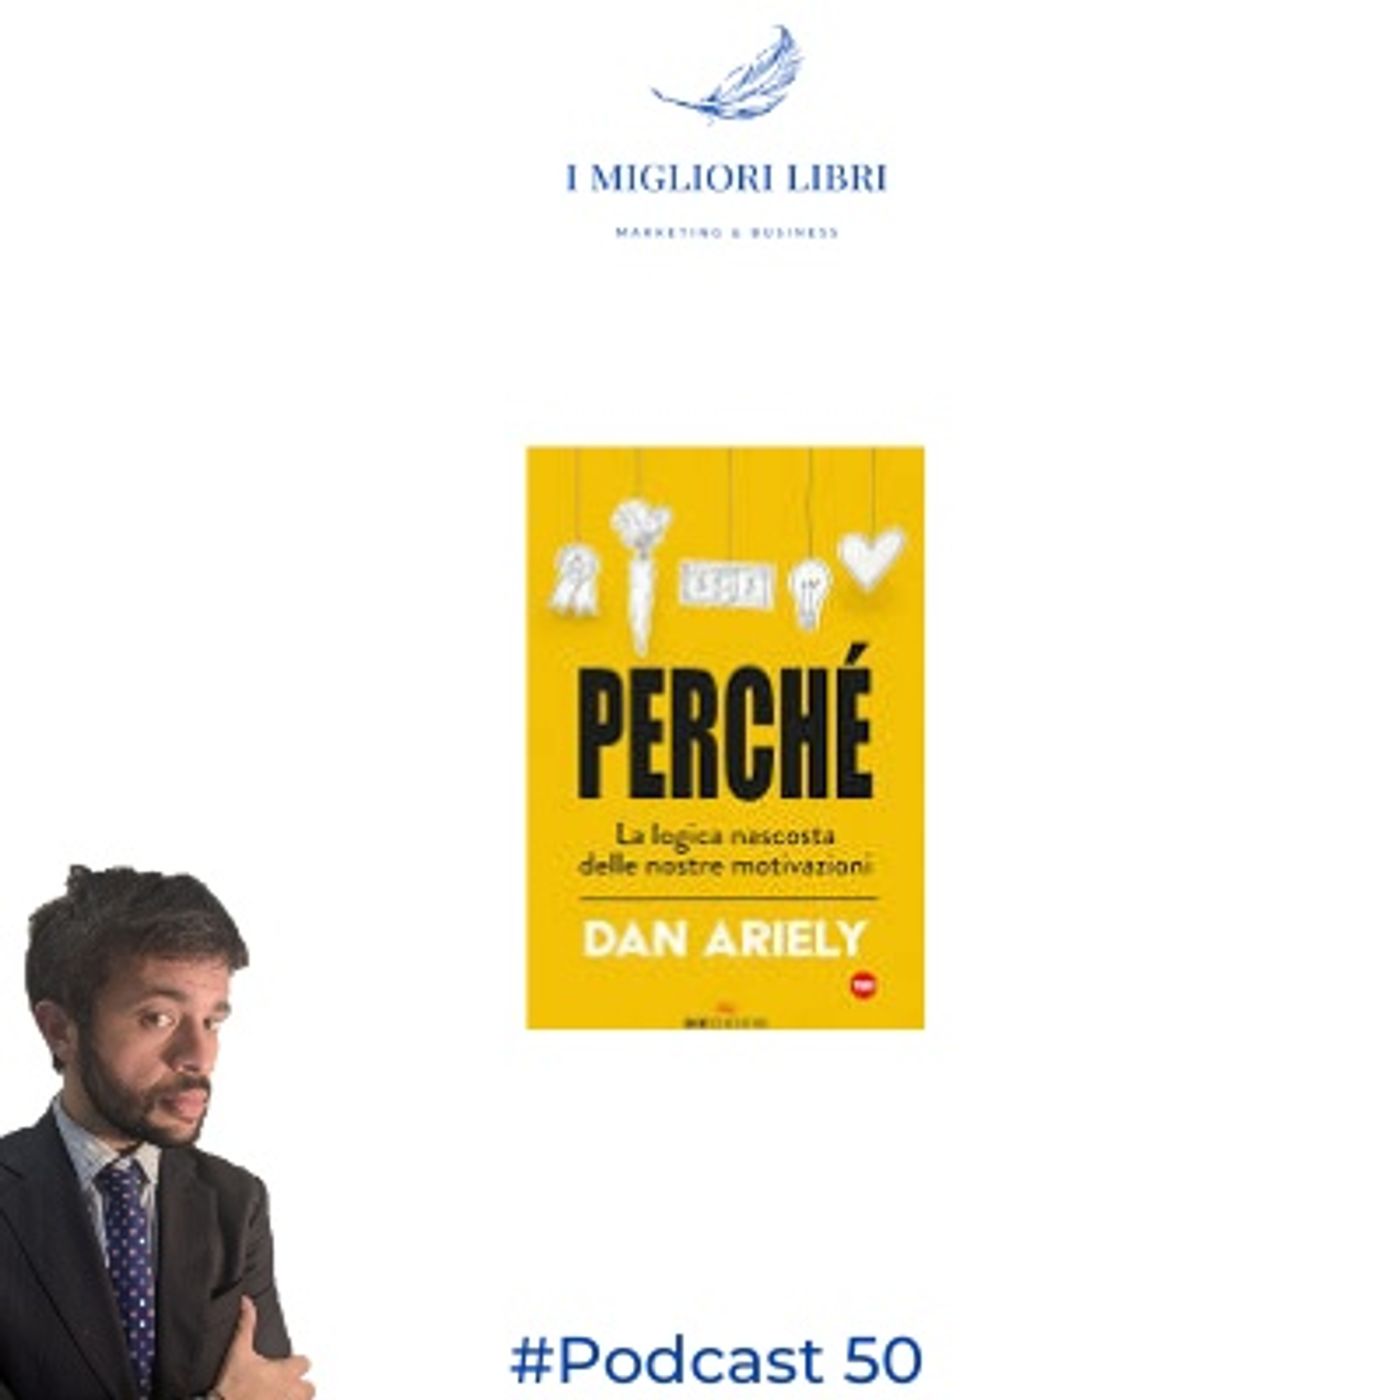 Episodio 50 - "Perchè" di D. Ariely- I Migliori Libri - Marketing & Business